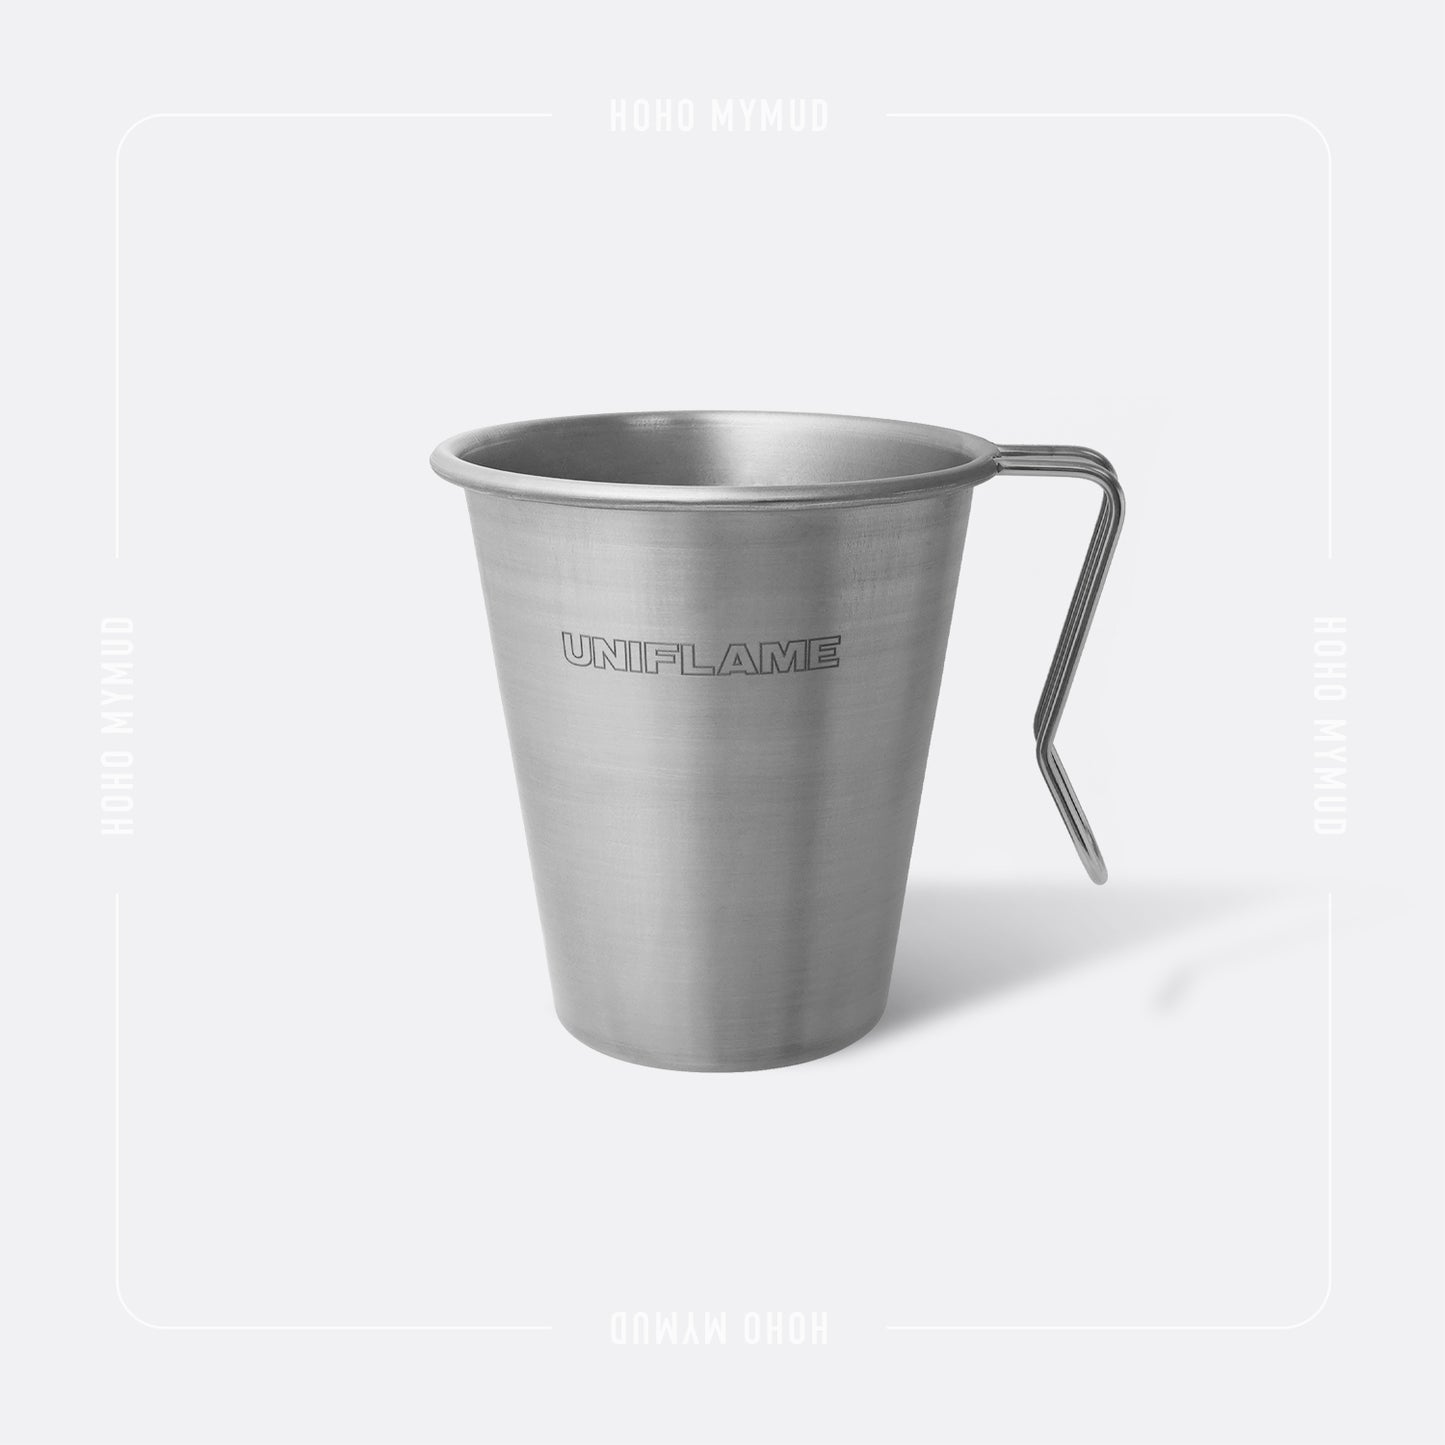 UNIFLAME Titanium Stacking Mug 500ml 可堆疊單層鈦杯